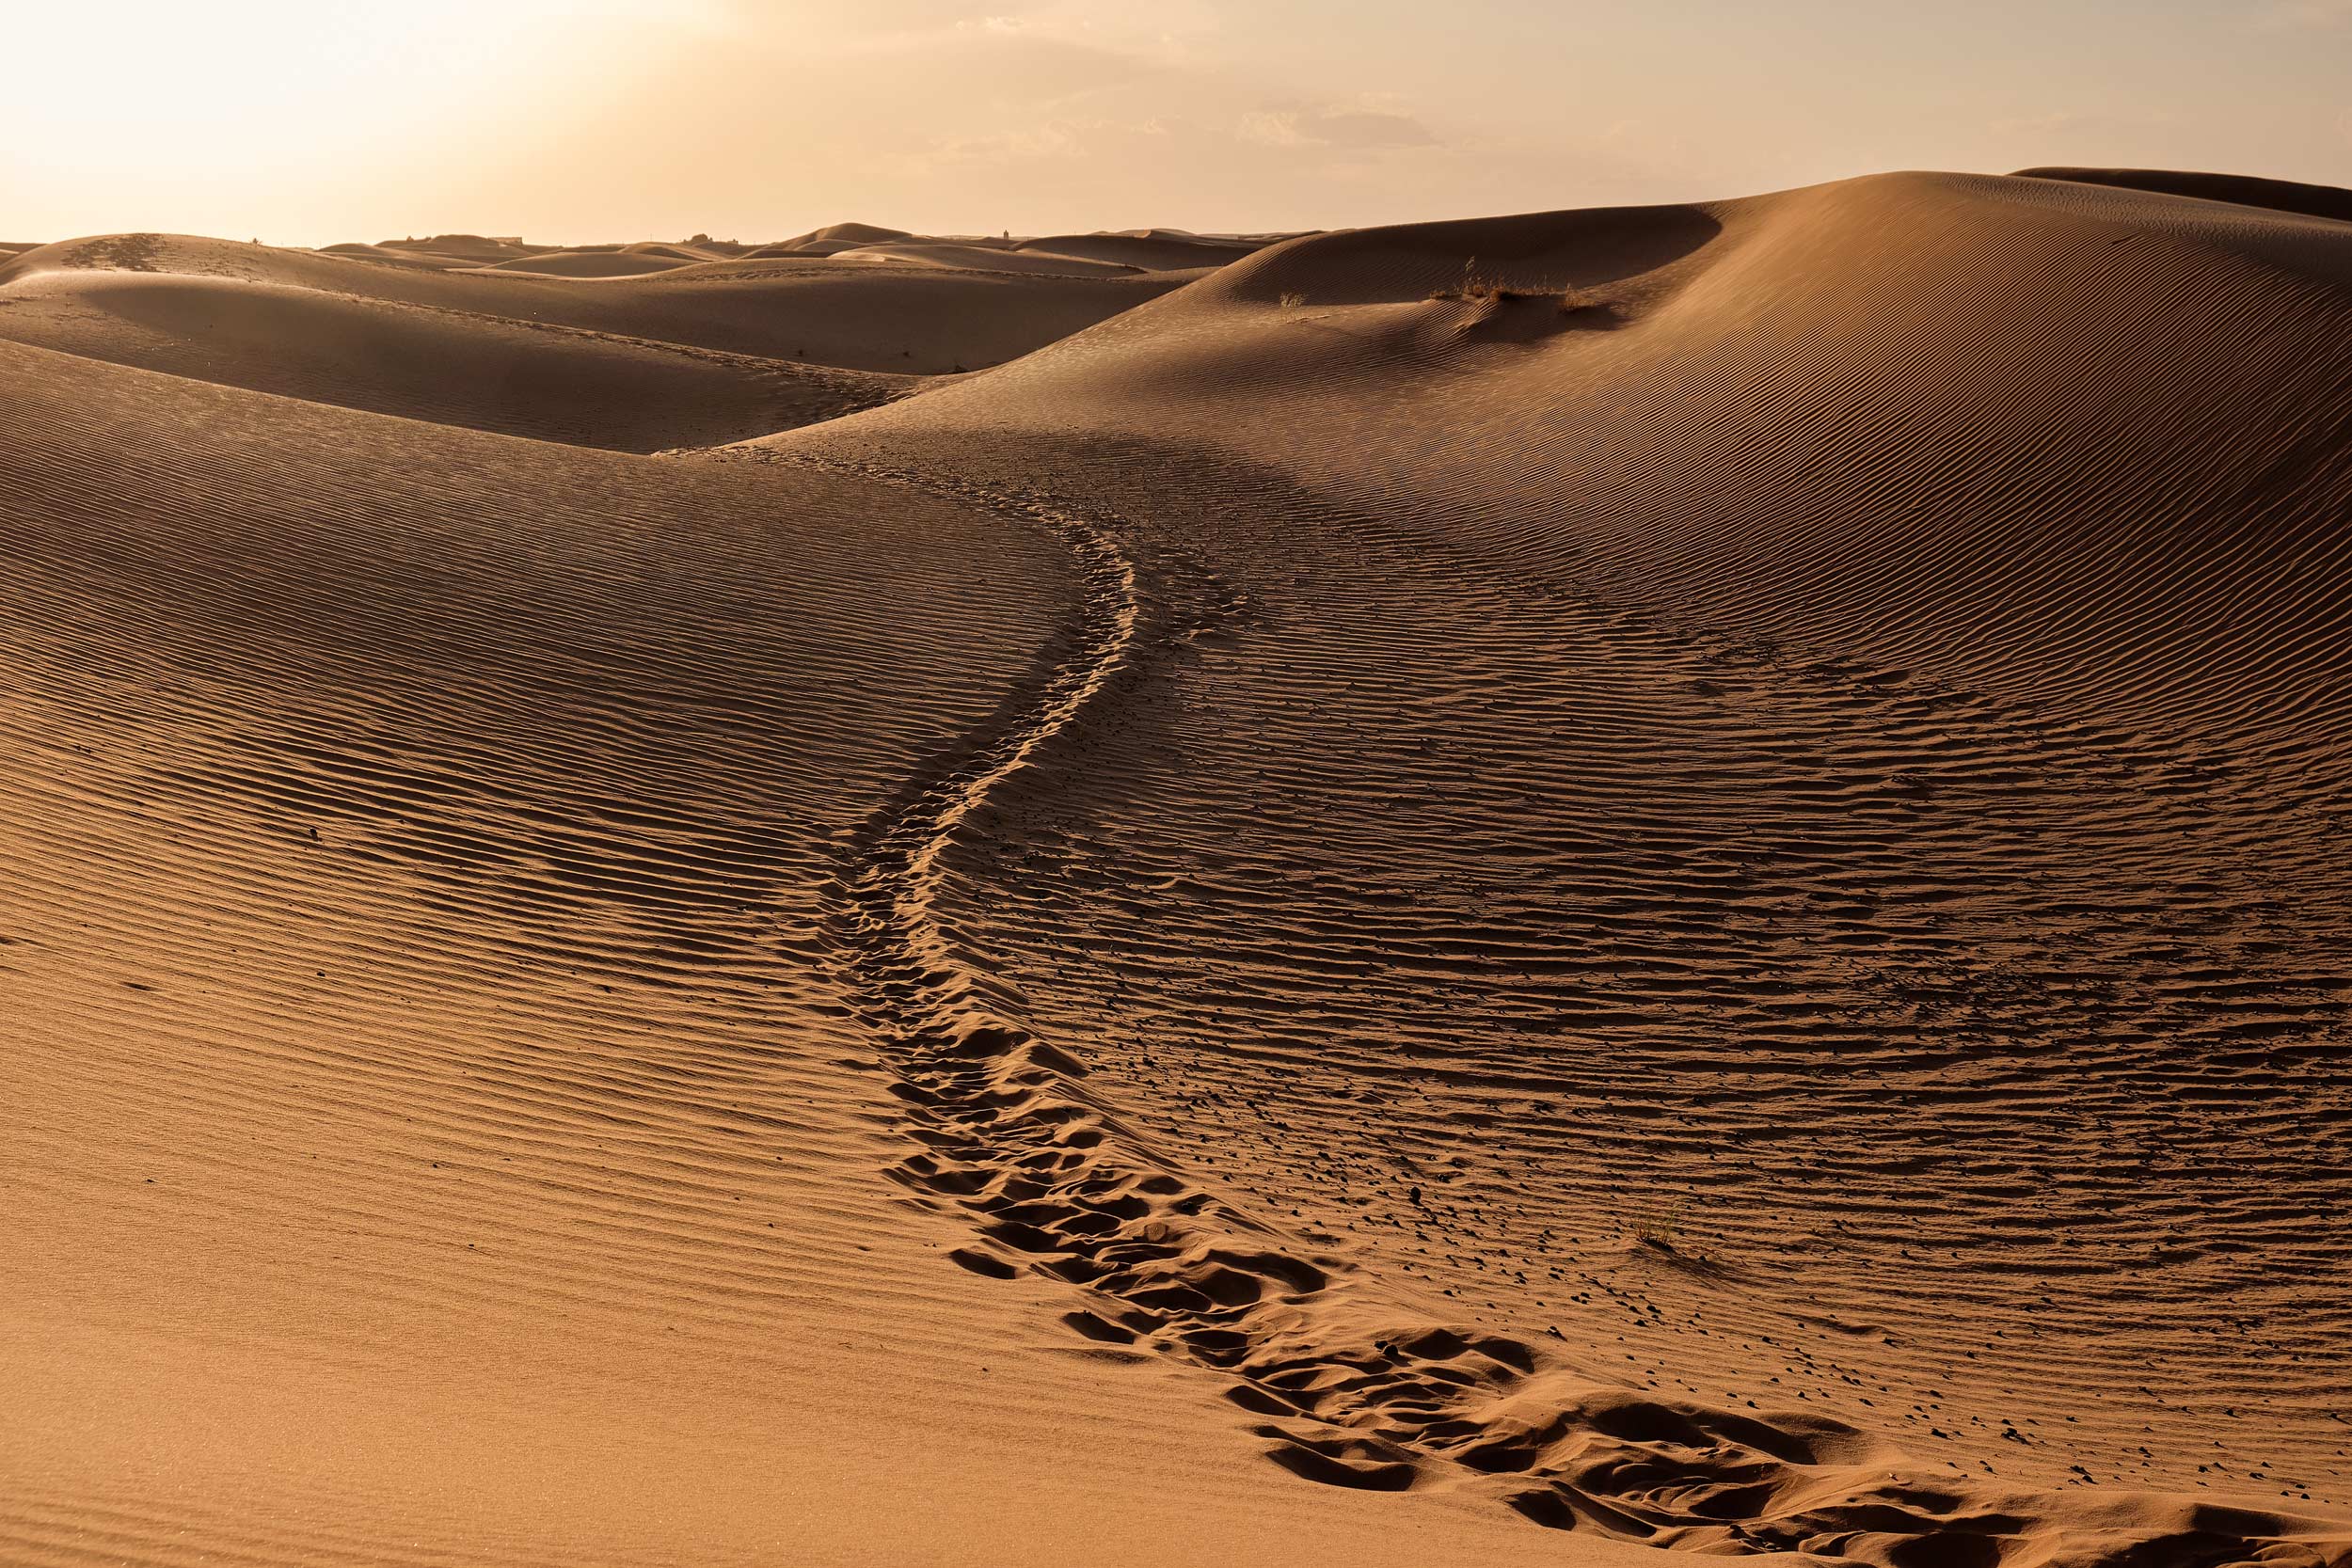 Percorso tra le dune nel deserto